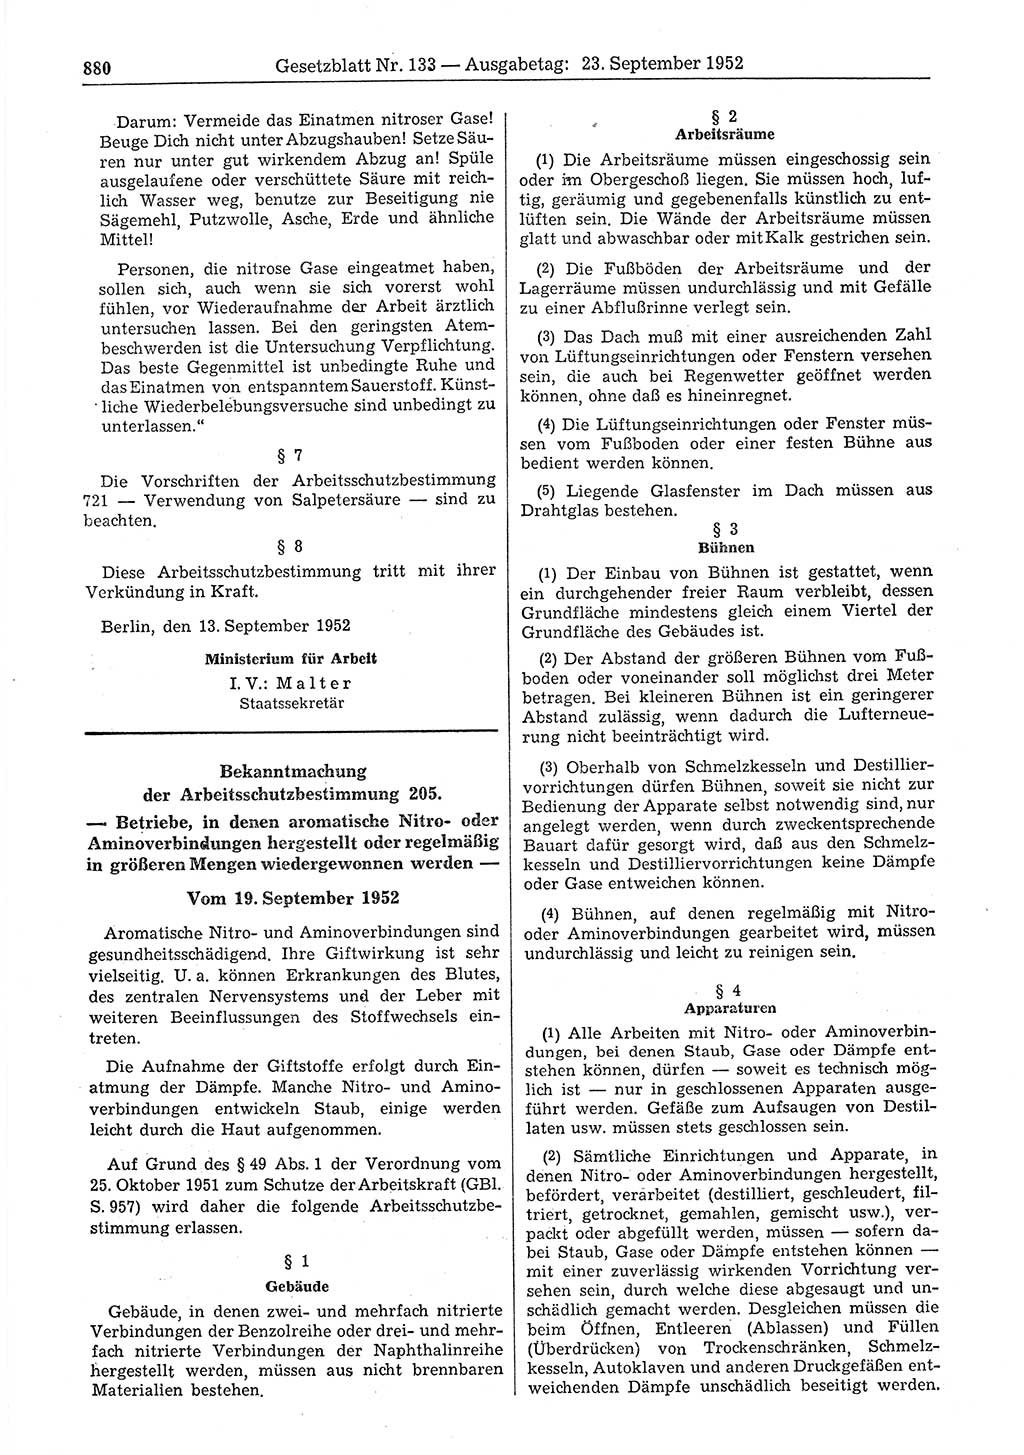 Gesetzblatt (GBl.) der Deutschen Demokratischen Republik (DDR) 1952, Seite 880 (GBl. DDR 1952, S. 880)